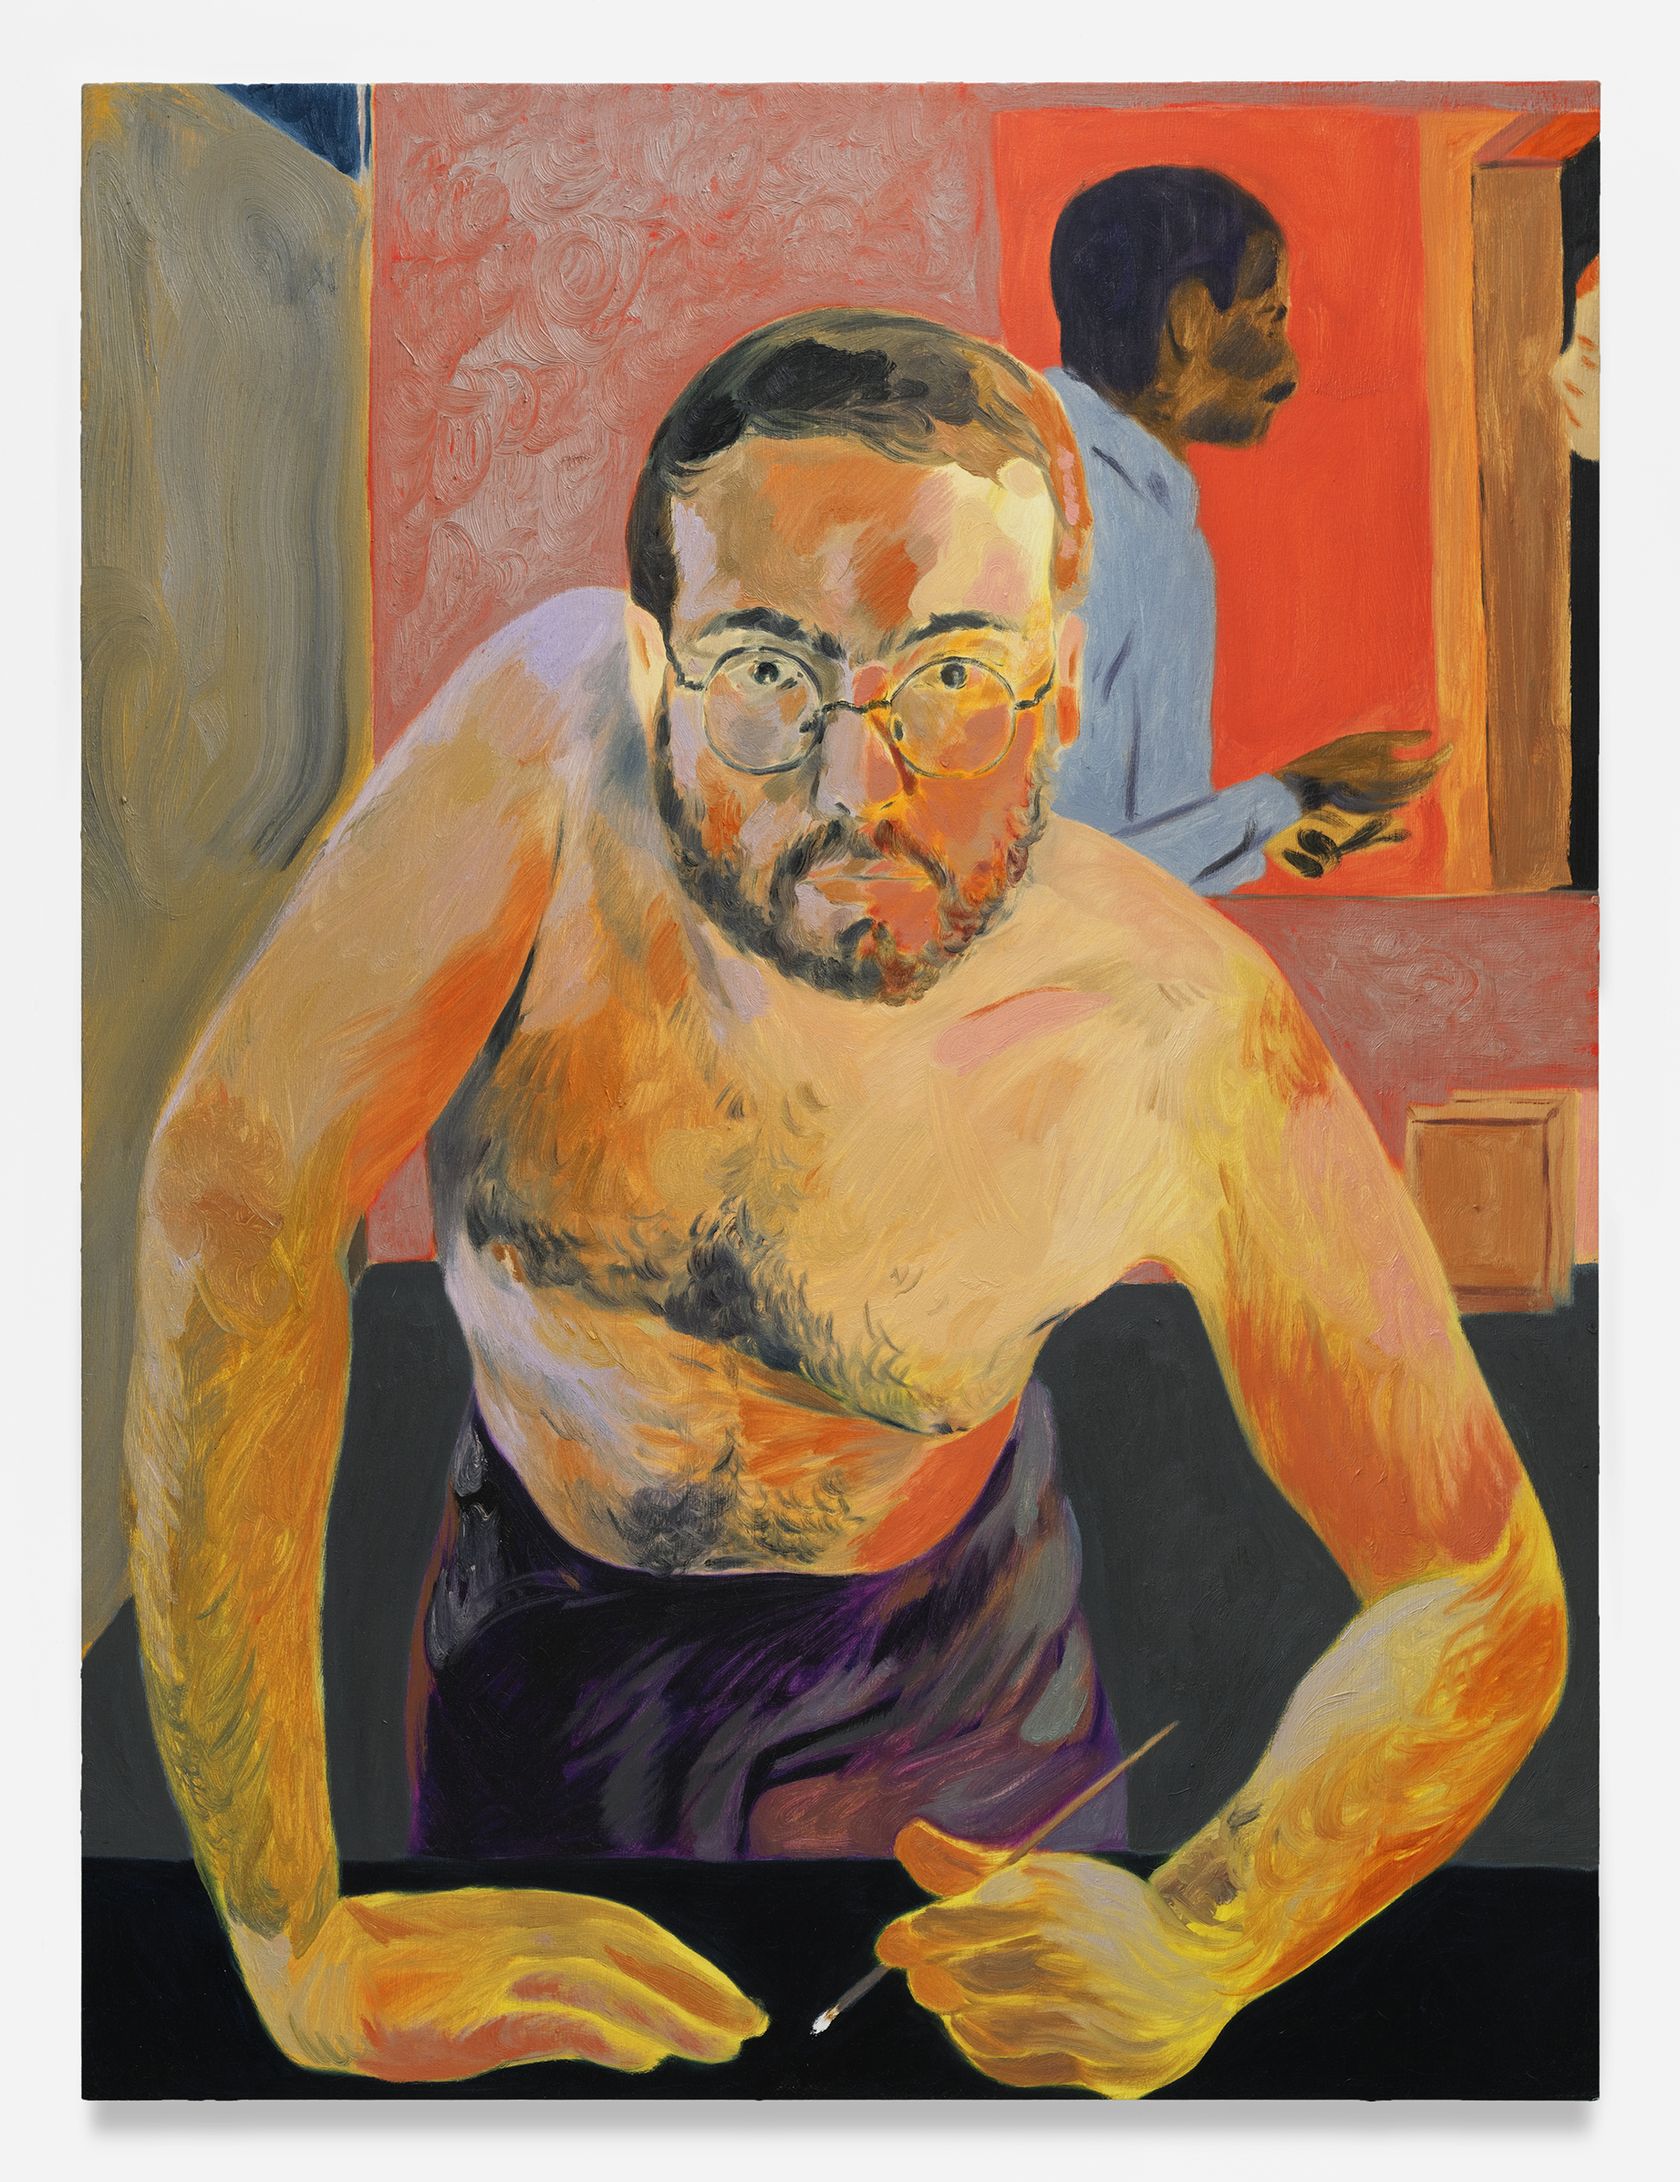 Self-portrait after Hockney '83